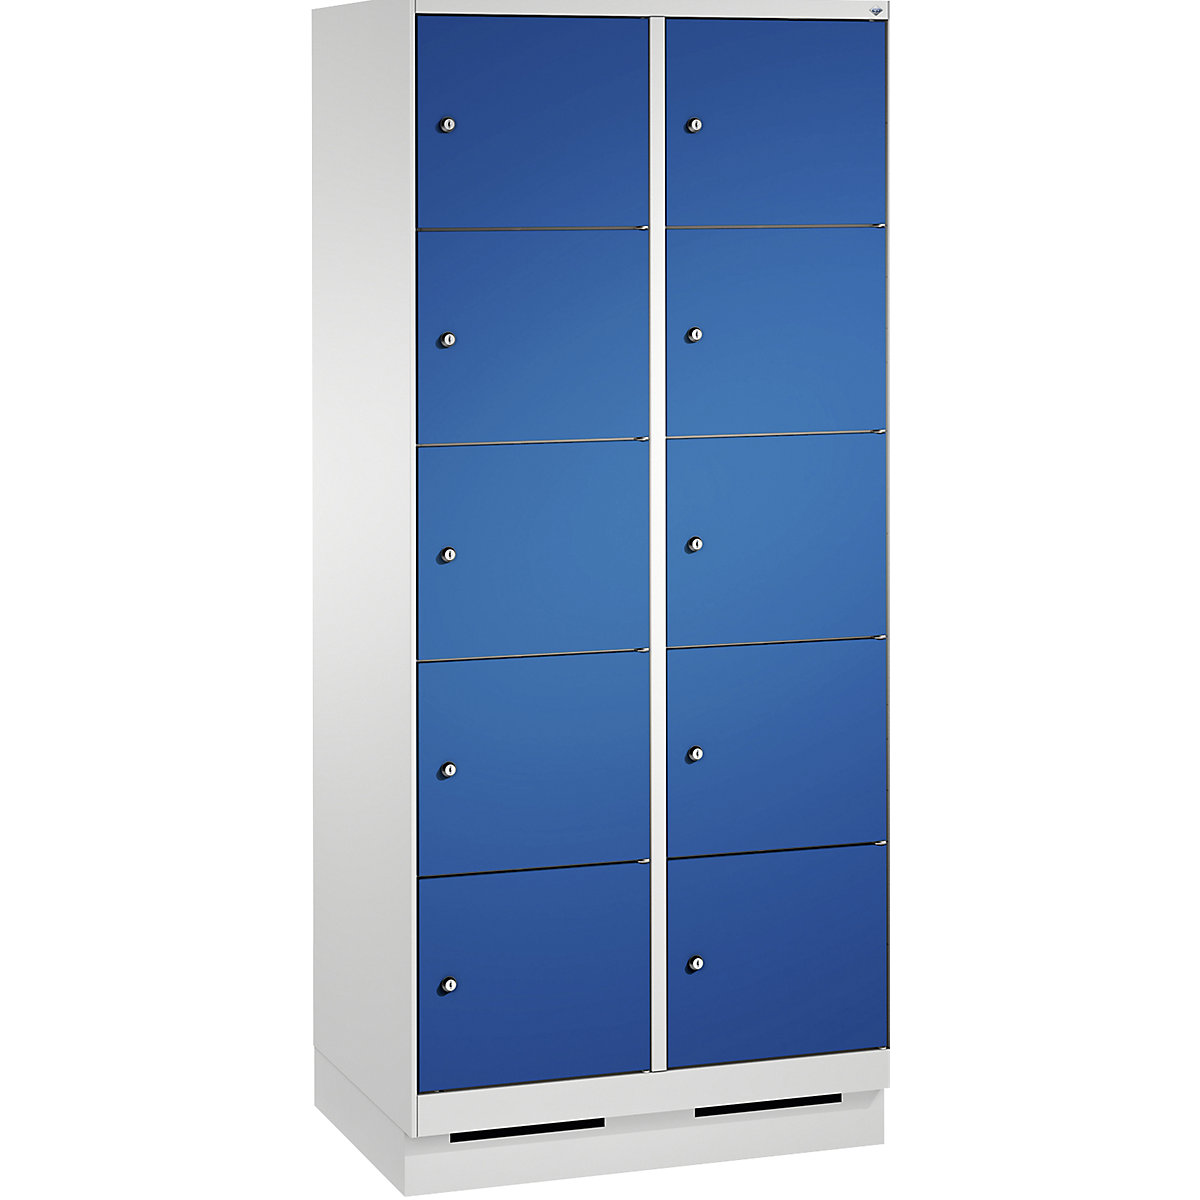 Armoire à casiers sur socle EVOLO – C+P, 2 compartiments, 5 casiers chacun, largeur compartiments 400 mm, gris clair / bleu gentiane-17